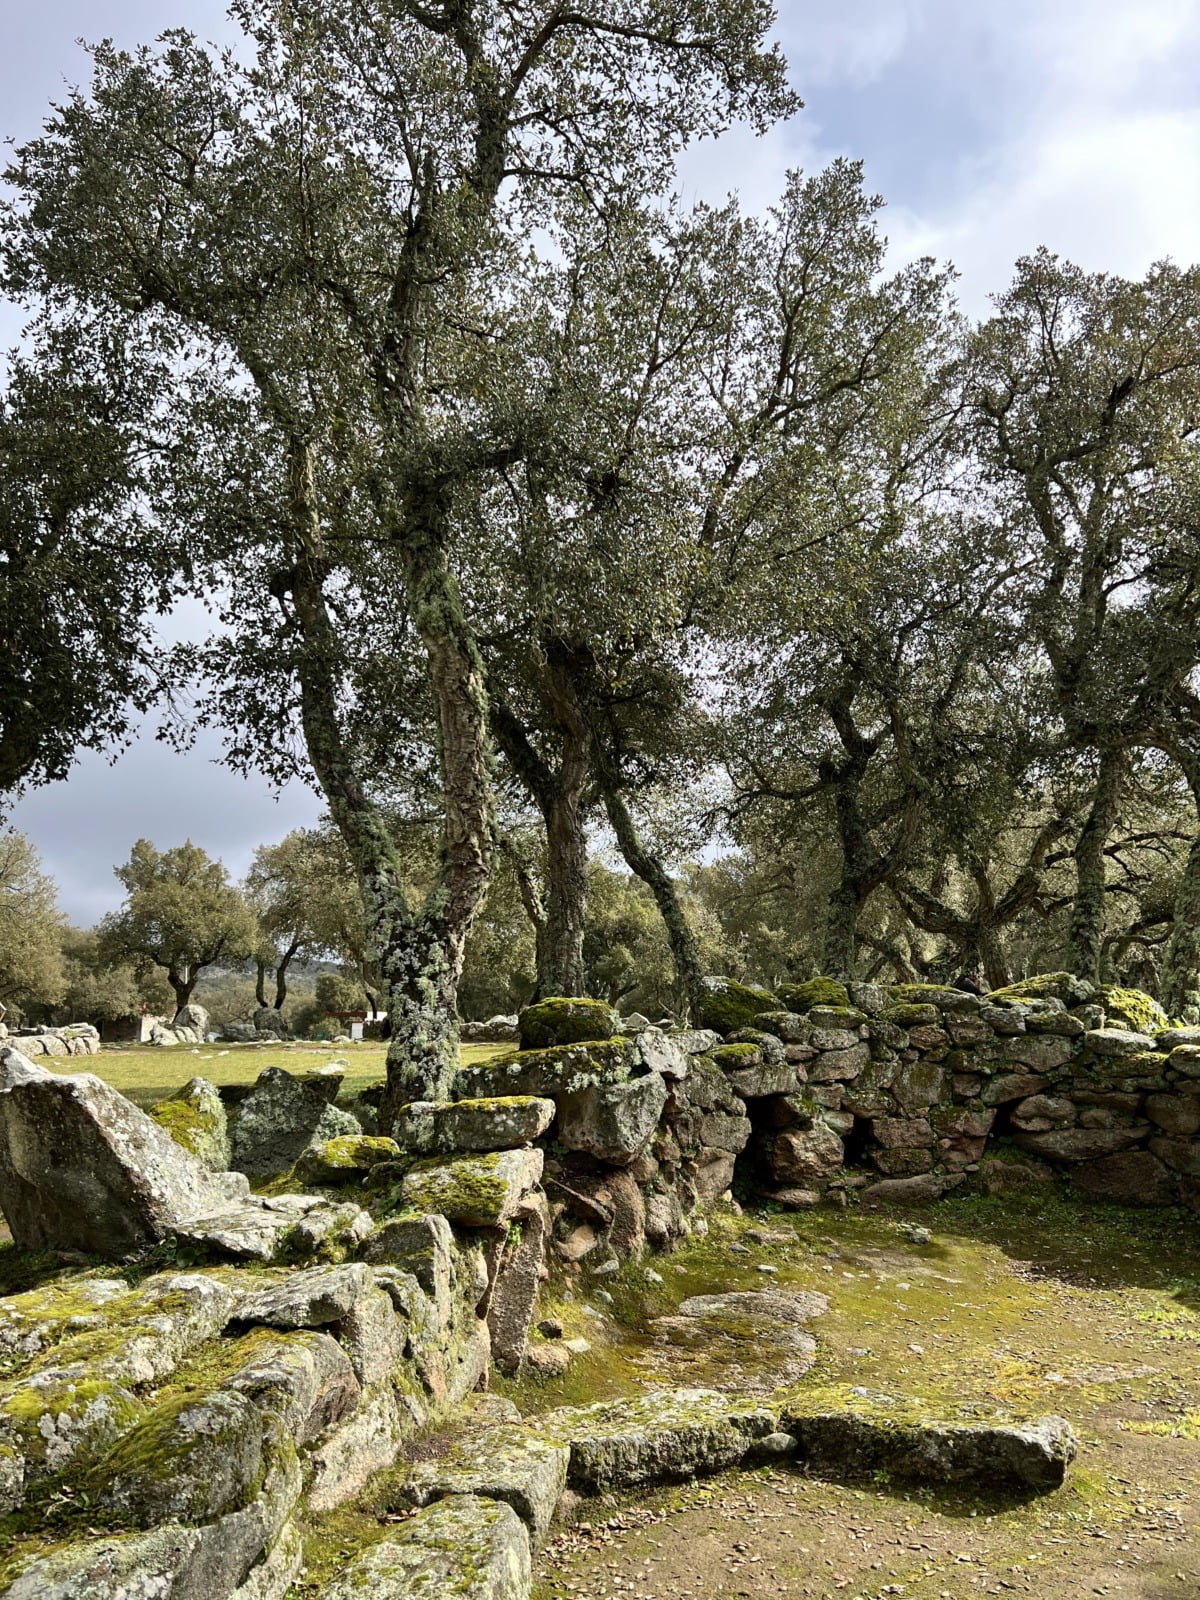 Visitar el yacimiento arqueológico de Romanzesu